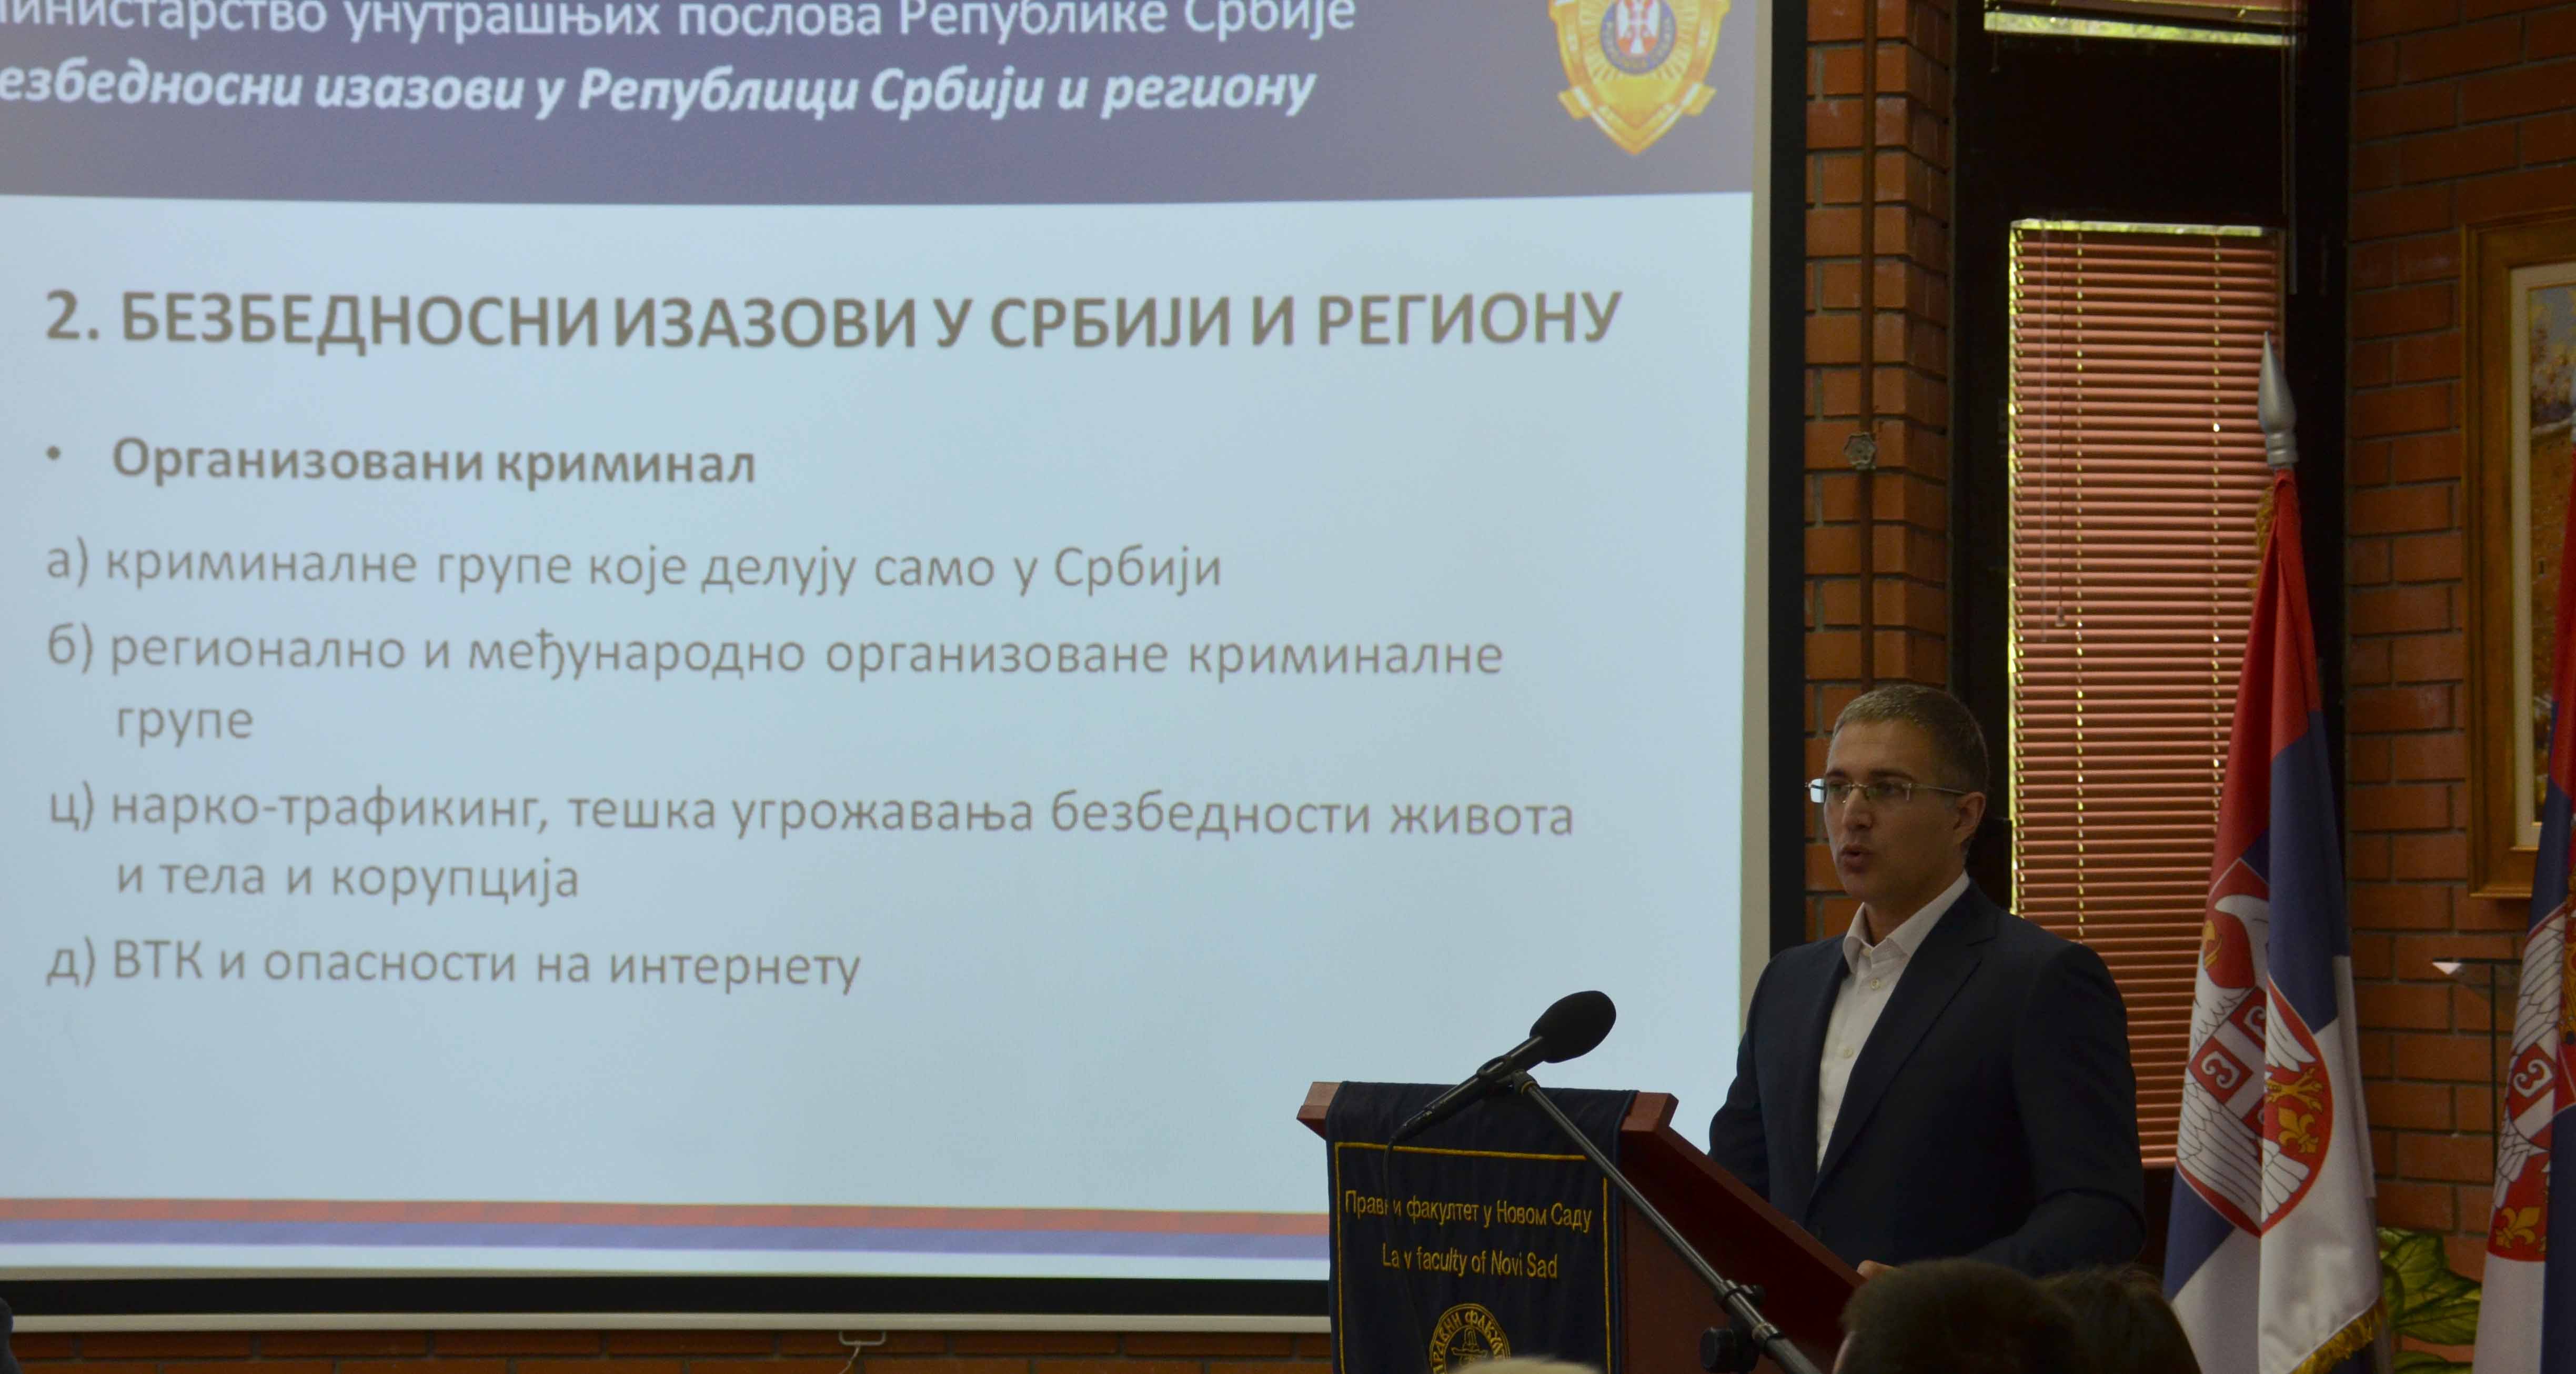 U Srbiji ne postoji ni jedna organizovana kriminalna grupa koja može da ugrozi bezbednost zemlje